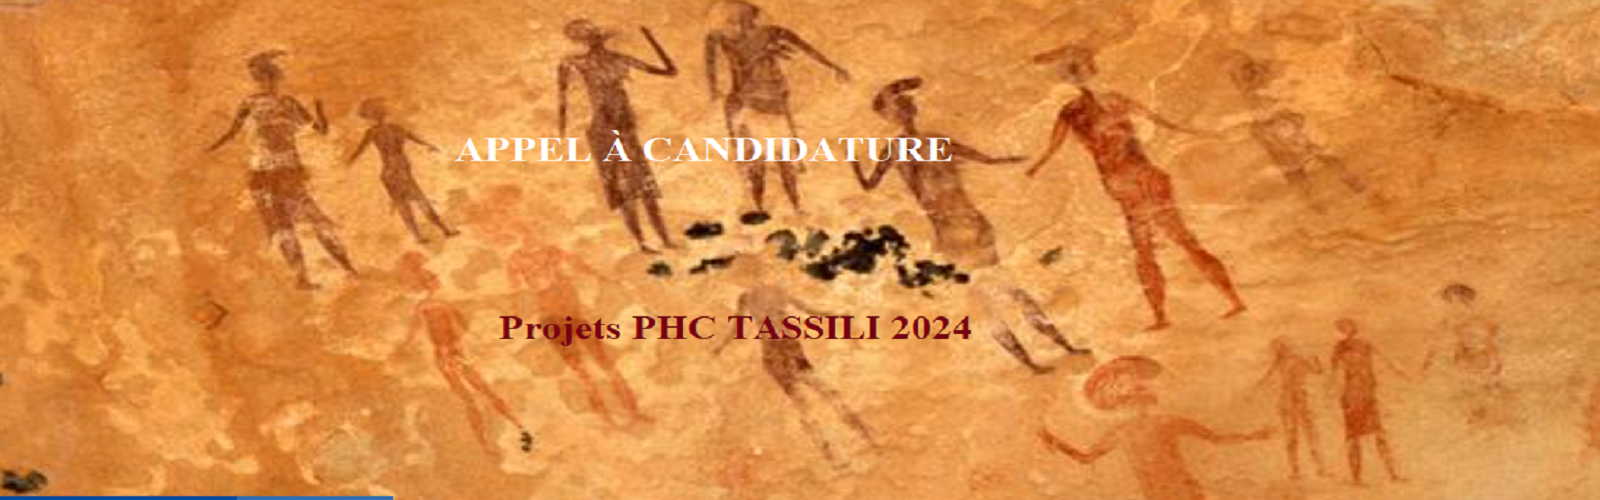 دعوة لمشاريع PHC طاسيلي + 2024